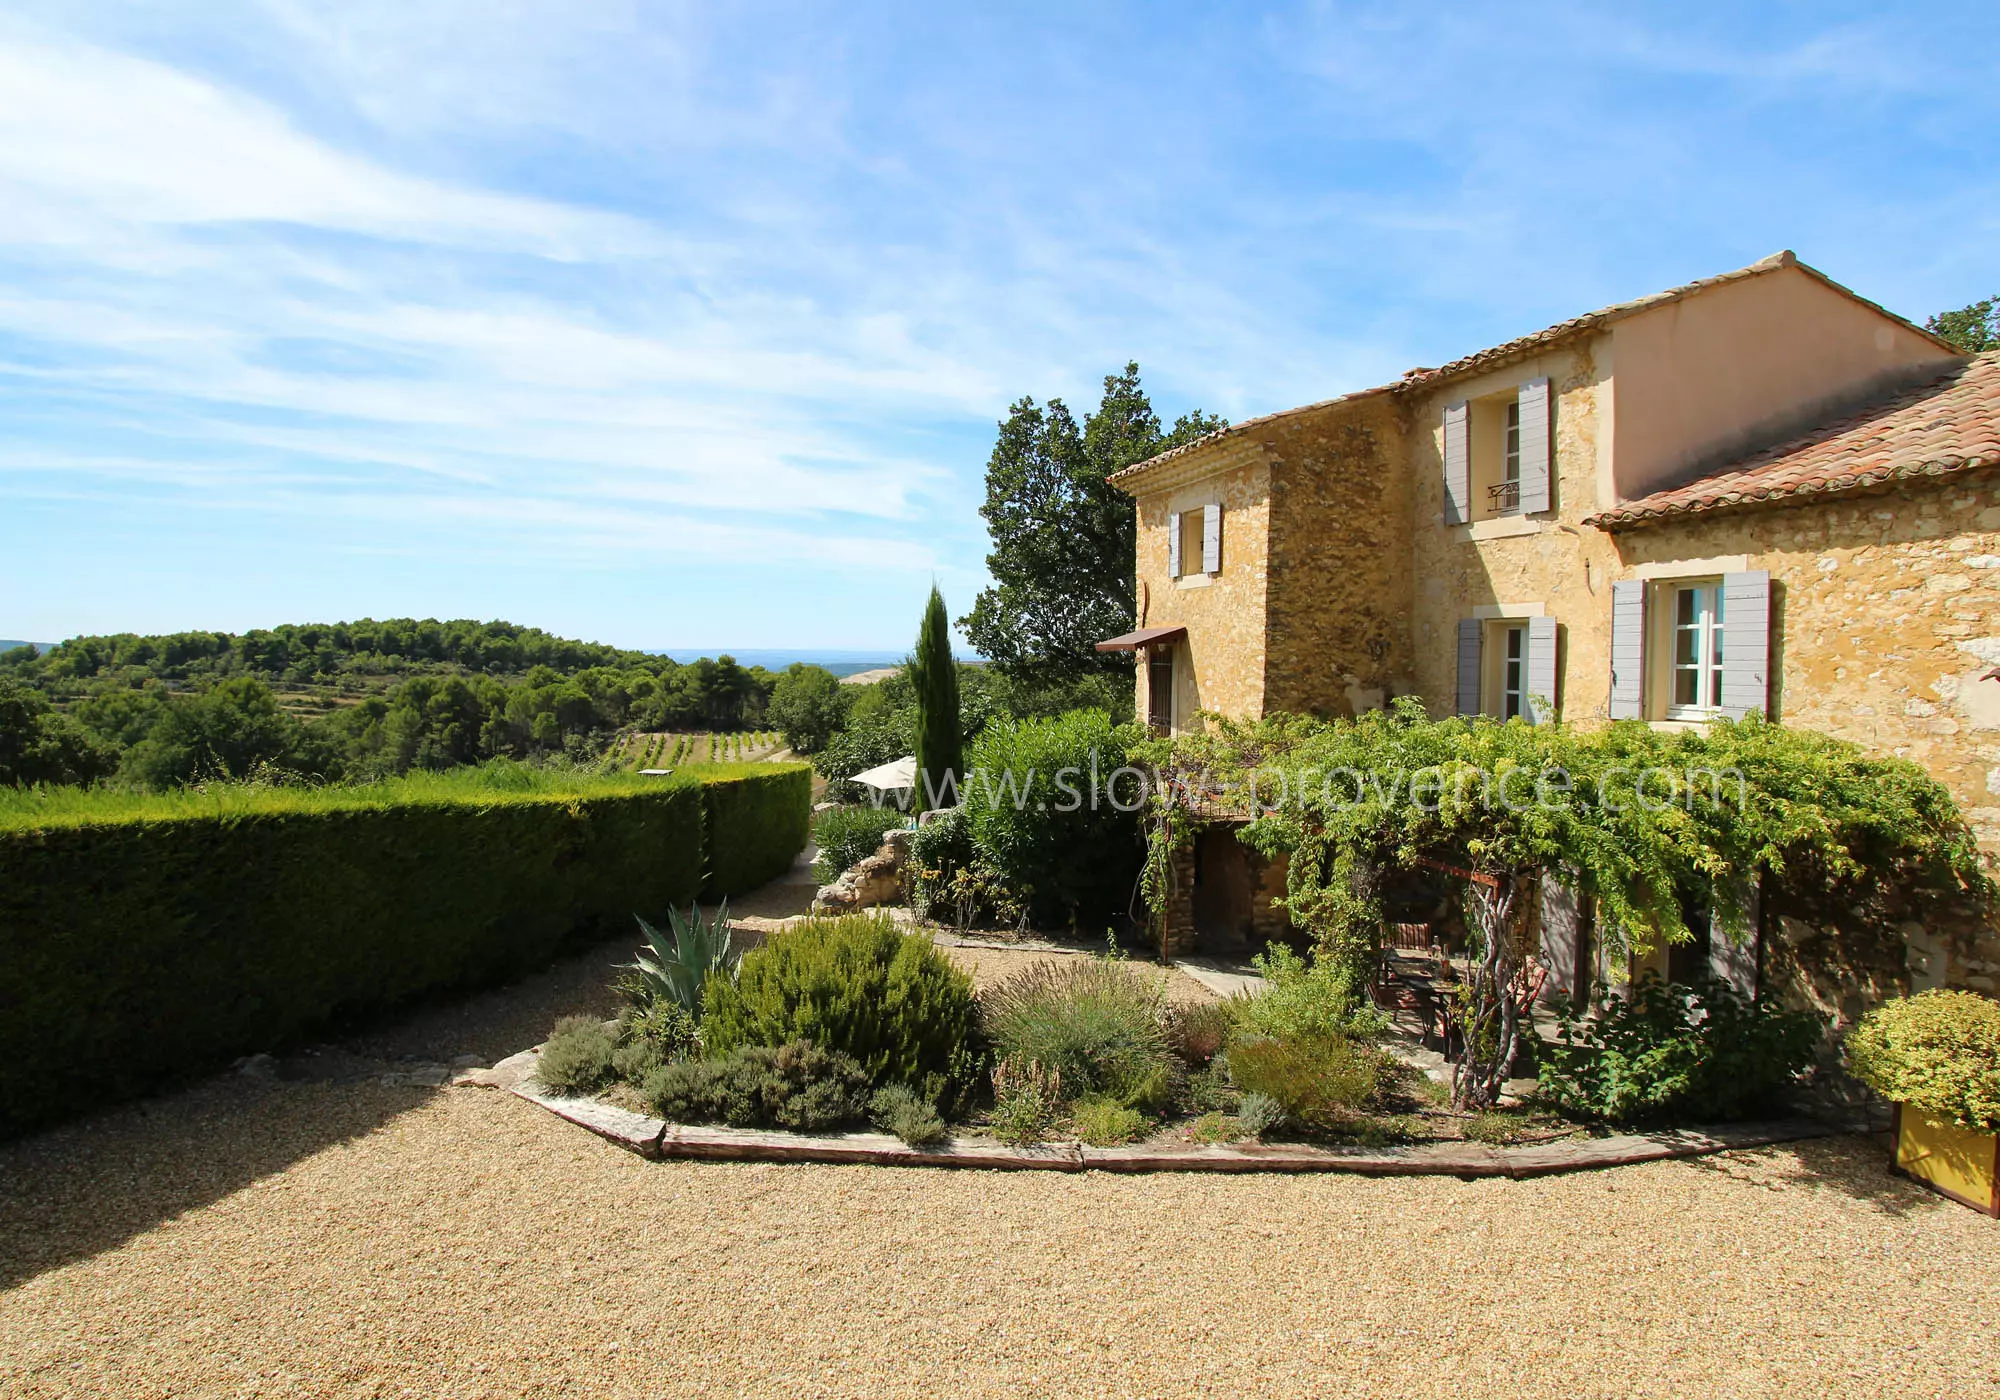 Charm of the Provençal farmhouse